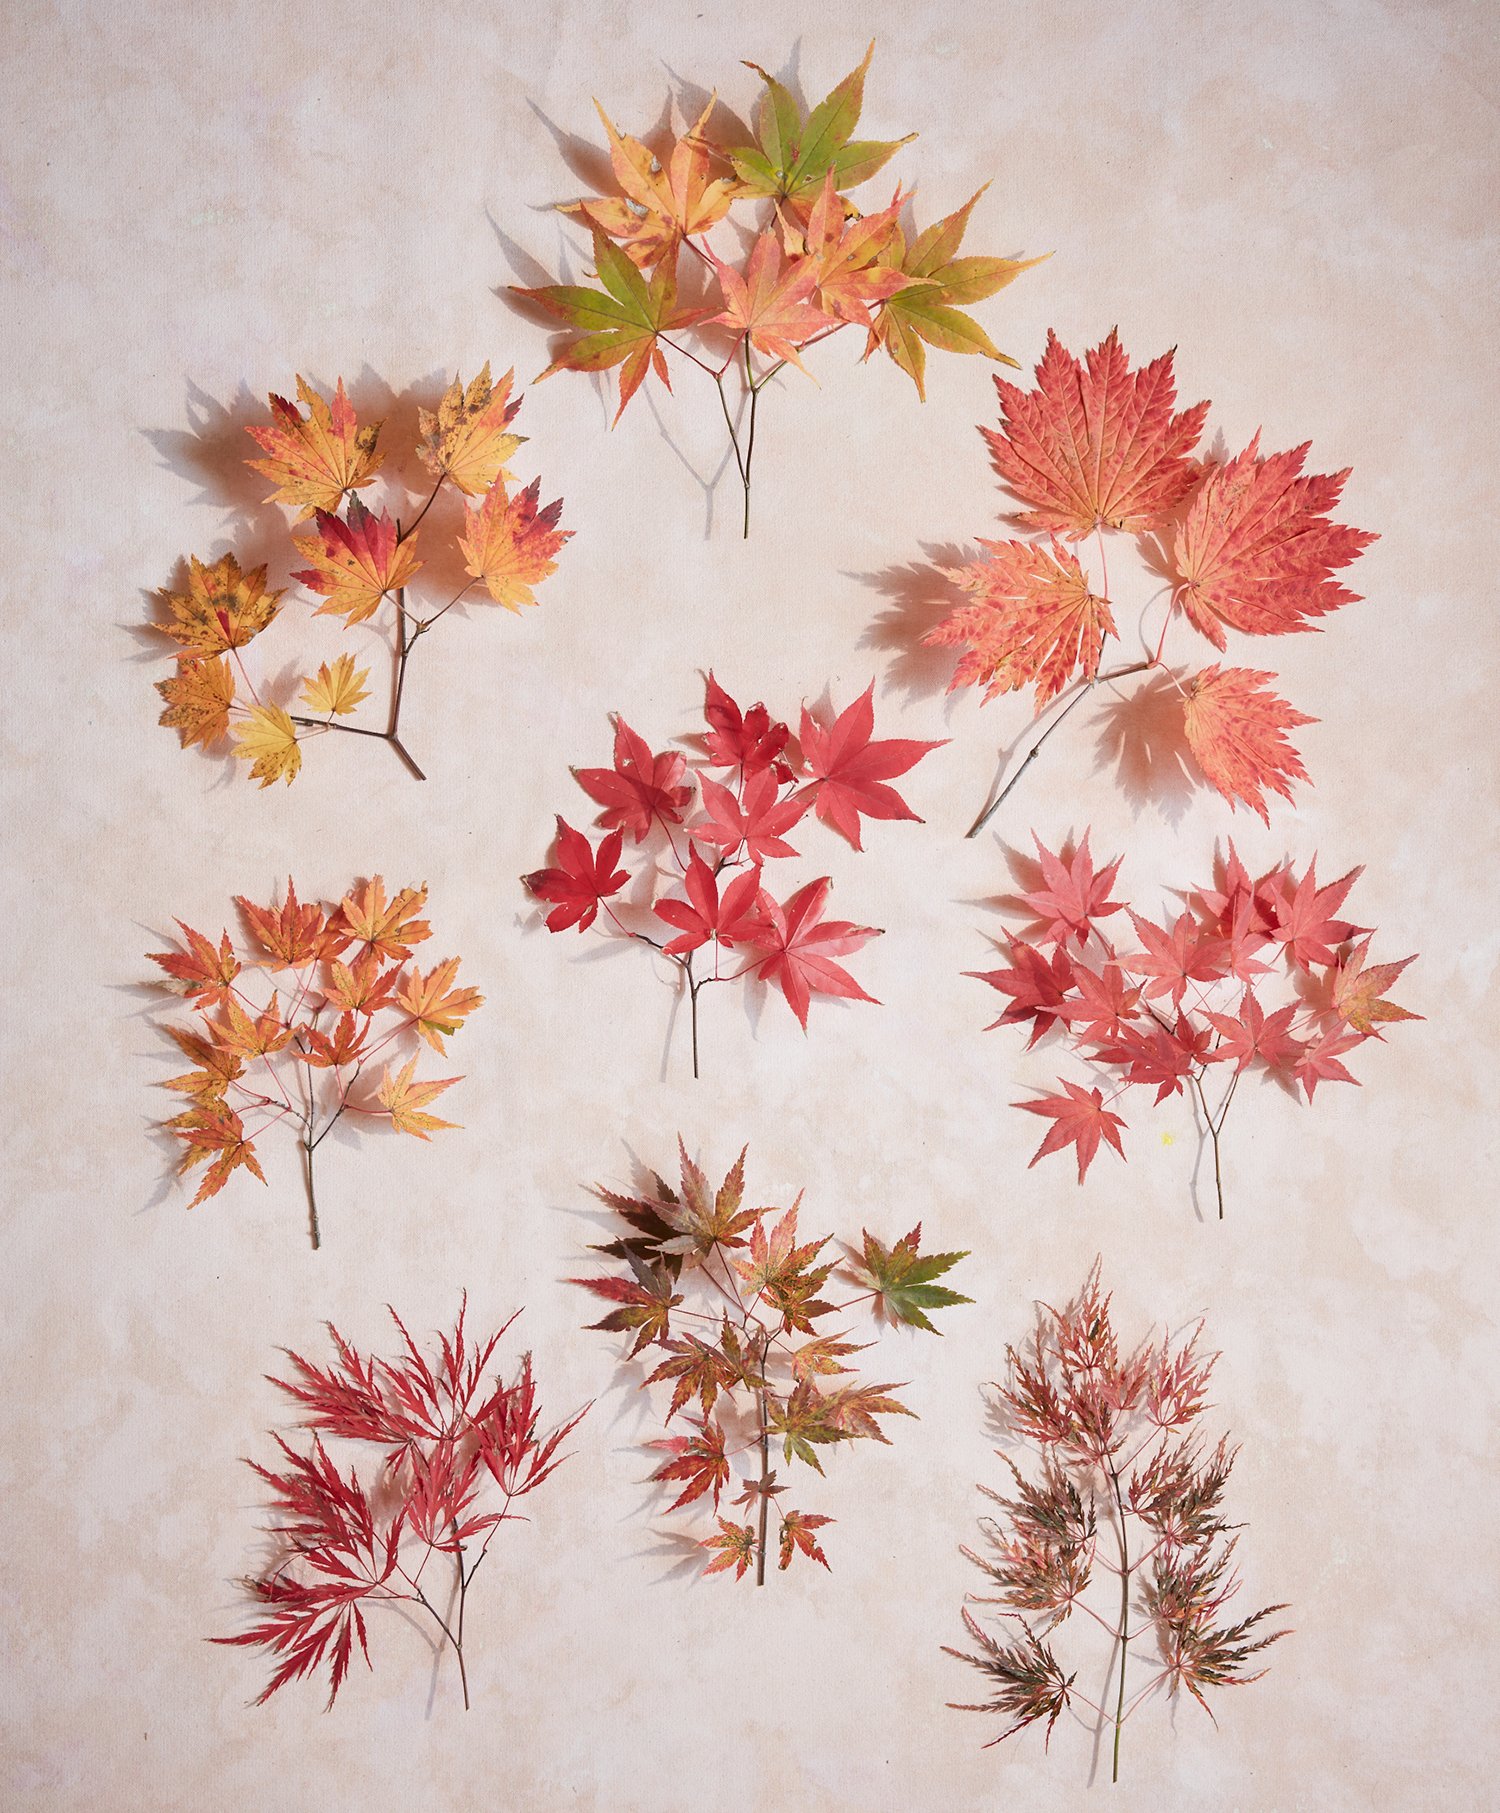 Japanese Maples photographed by Ngoc Minh Ngo